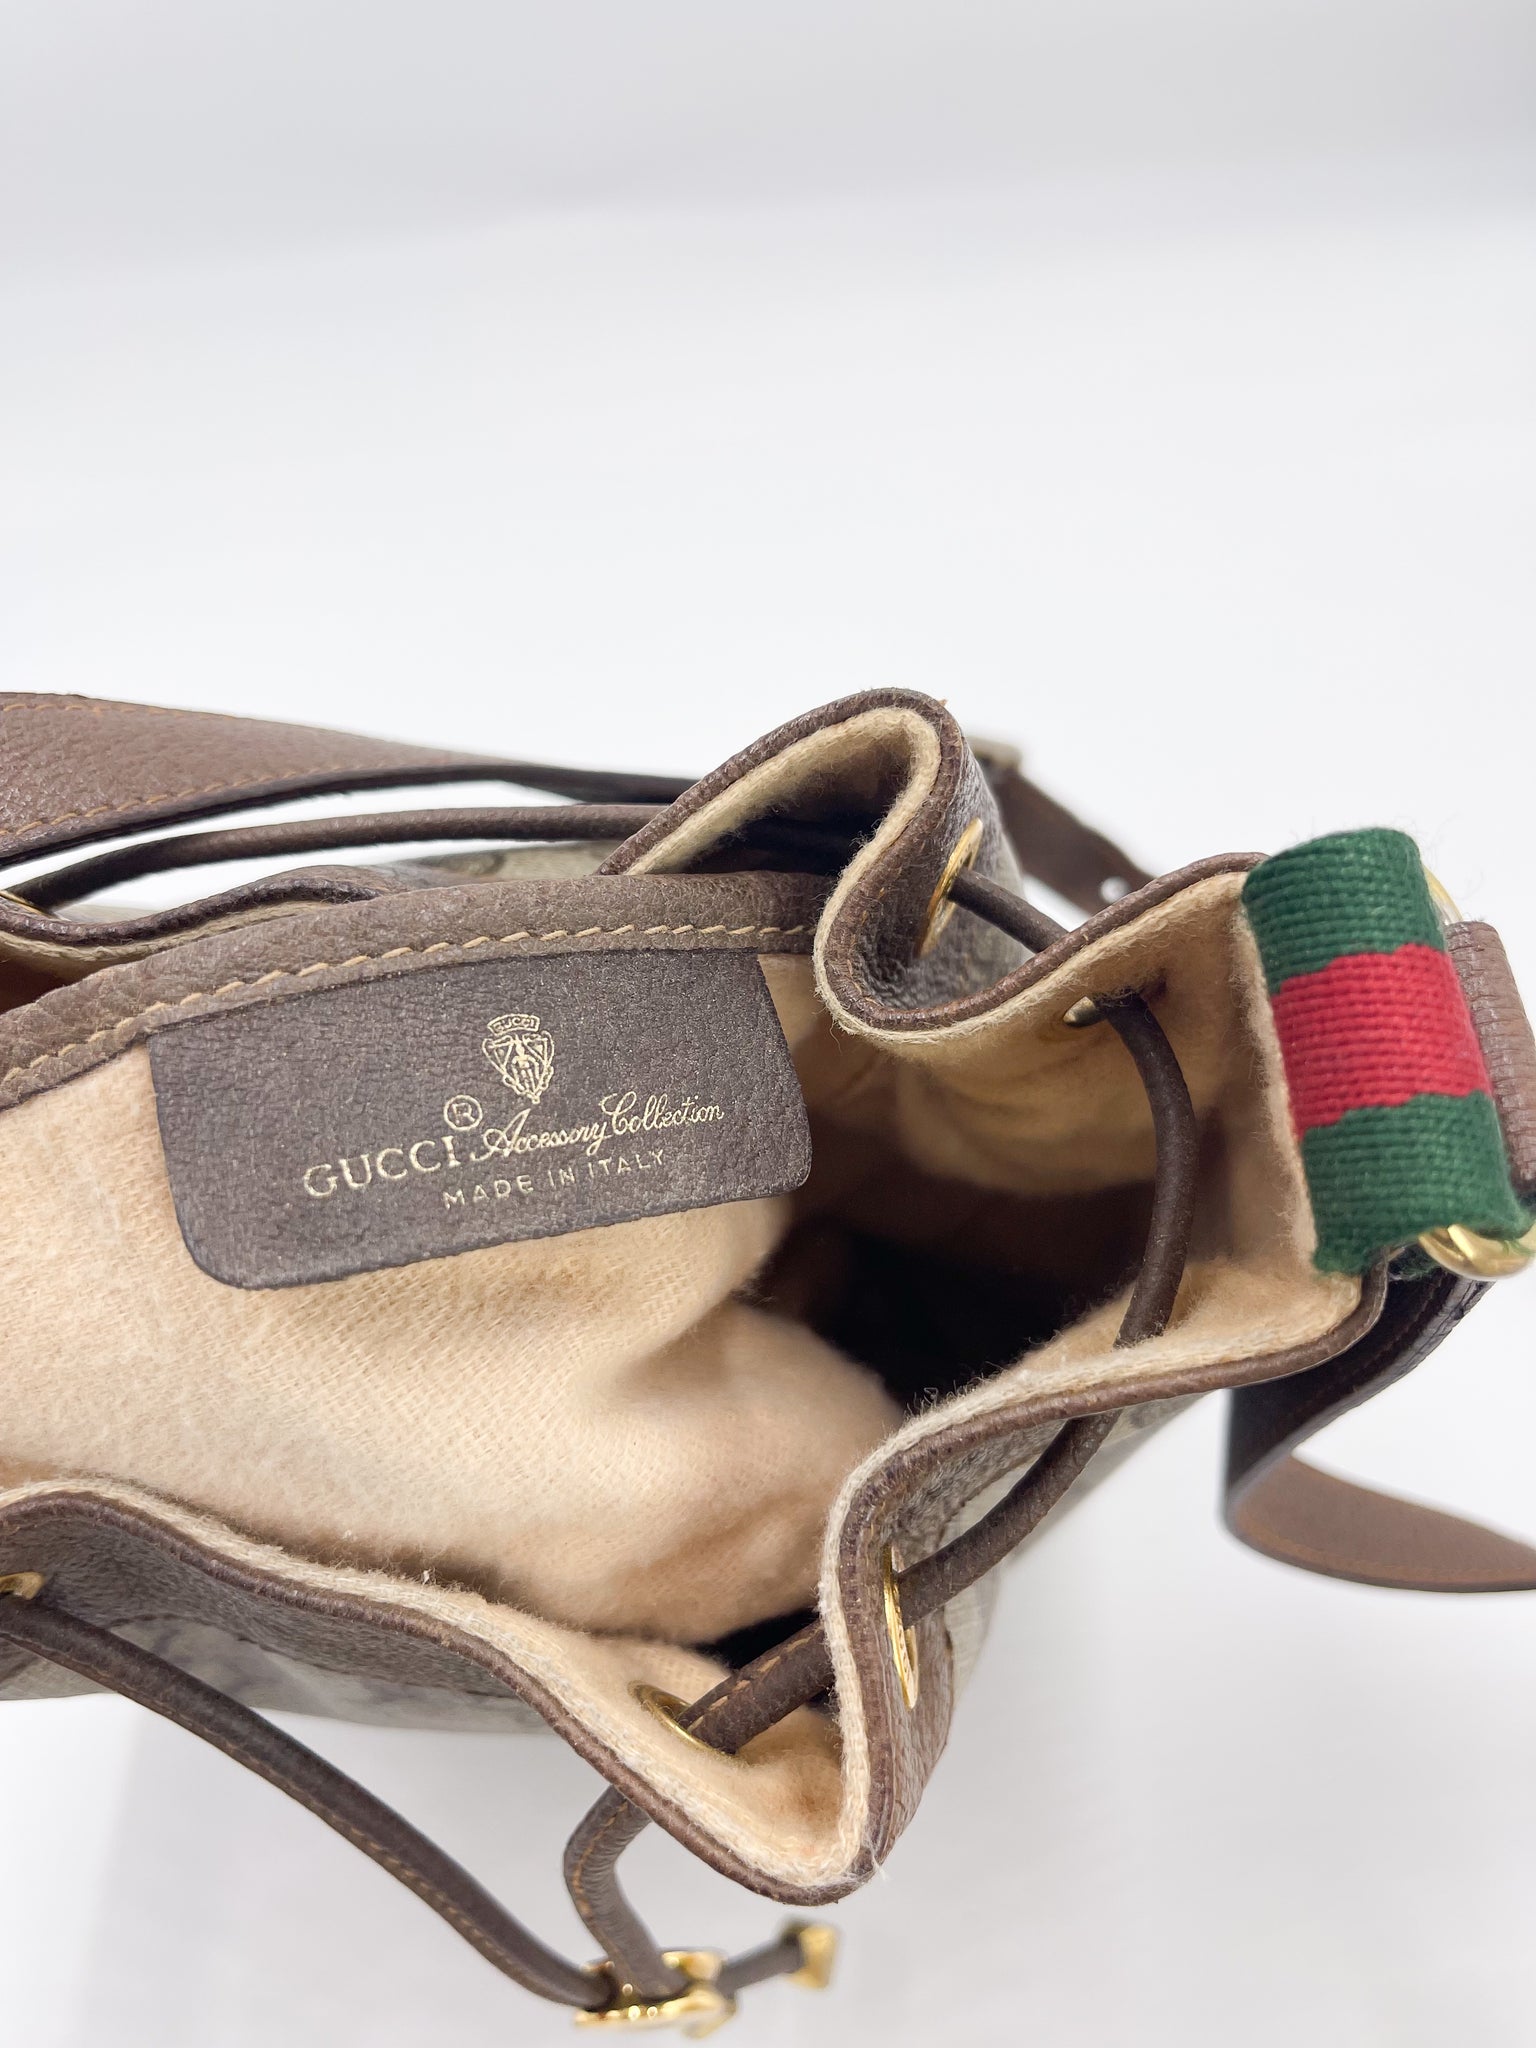 80s Gucci GG Supreme Bucket Bag